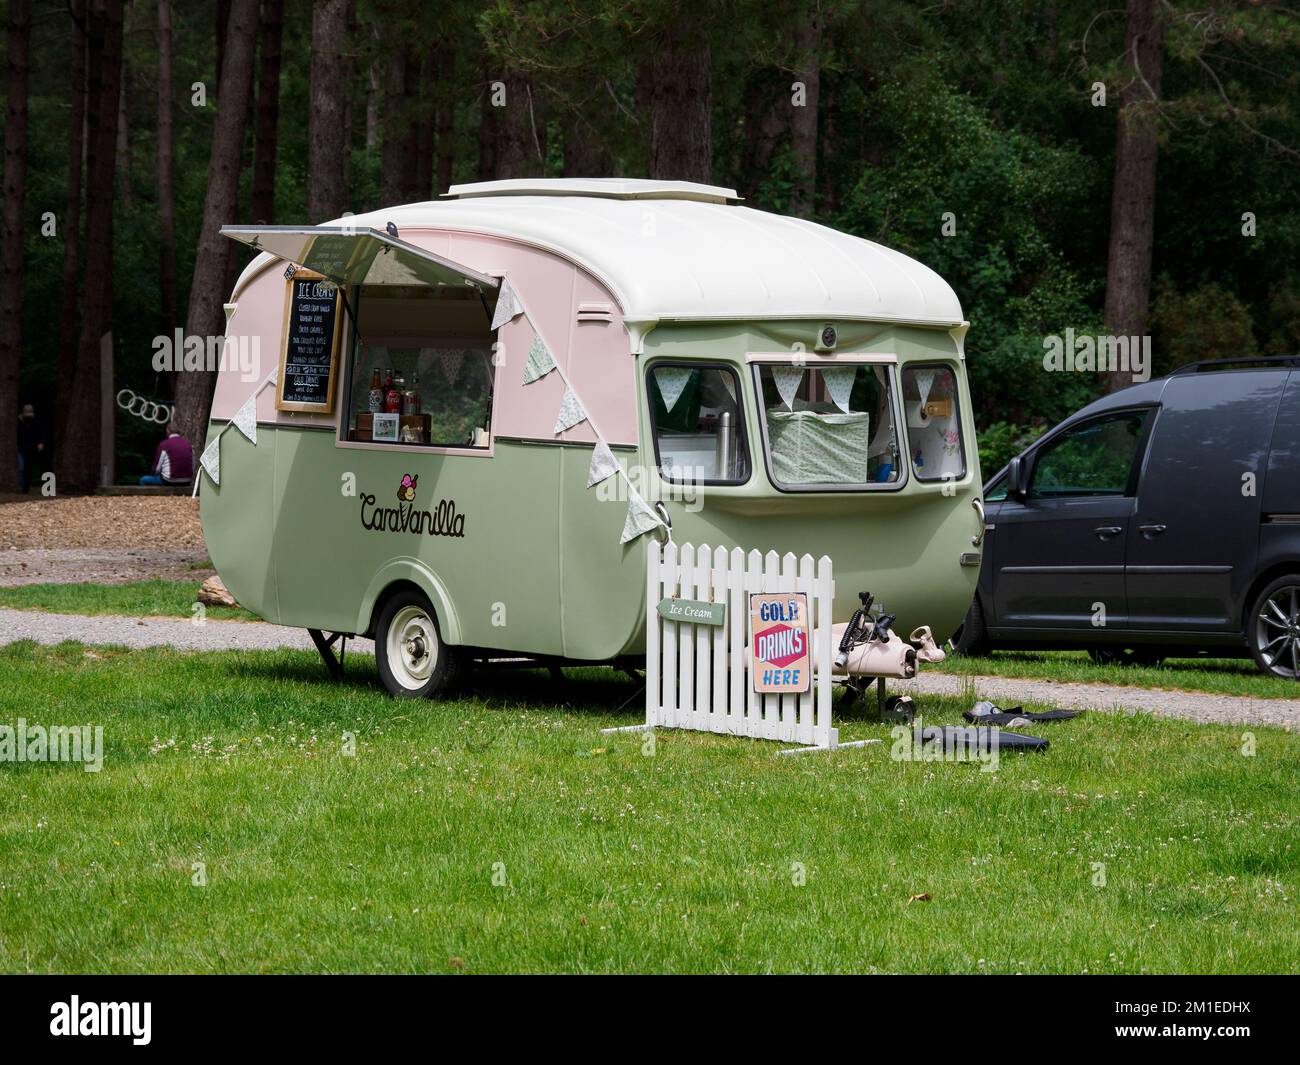 Caravan vintage usato per vendere gelati in un posto di bellezza, Forest of Bere, Fareham, Hants, UK Foto Stock